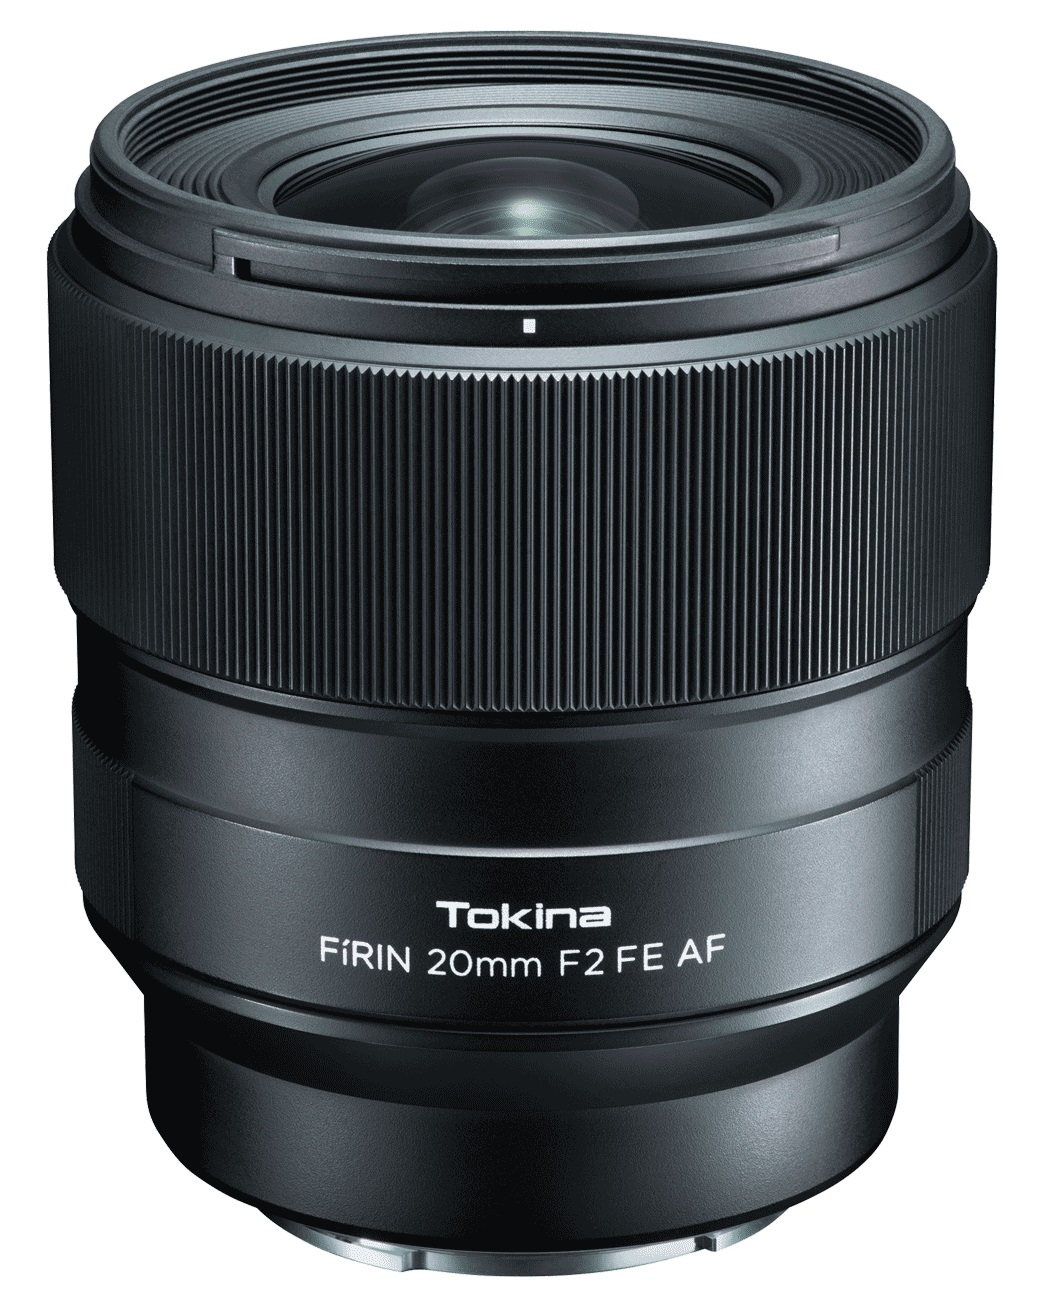 объектив tokina atx m 23mm af f1 4 e для sony e Объектив Tokina FIRIN 20mm F2 FE AF для Sony автофокус